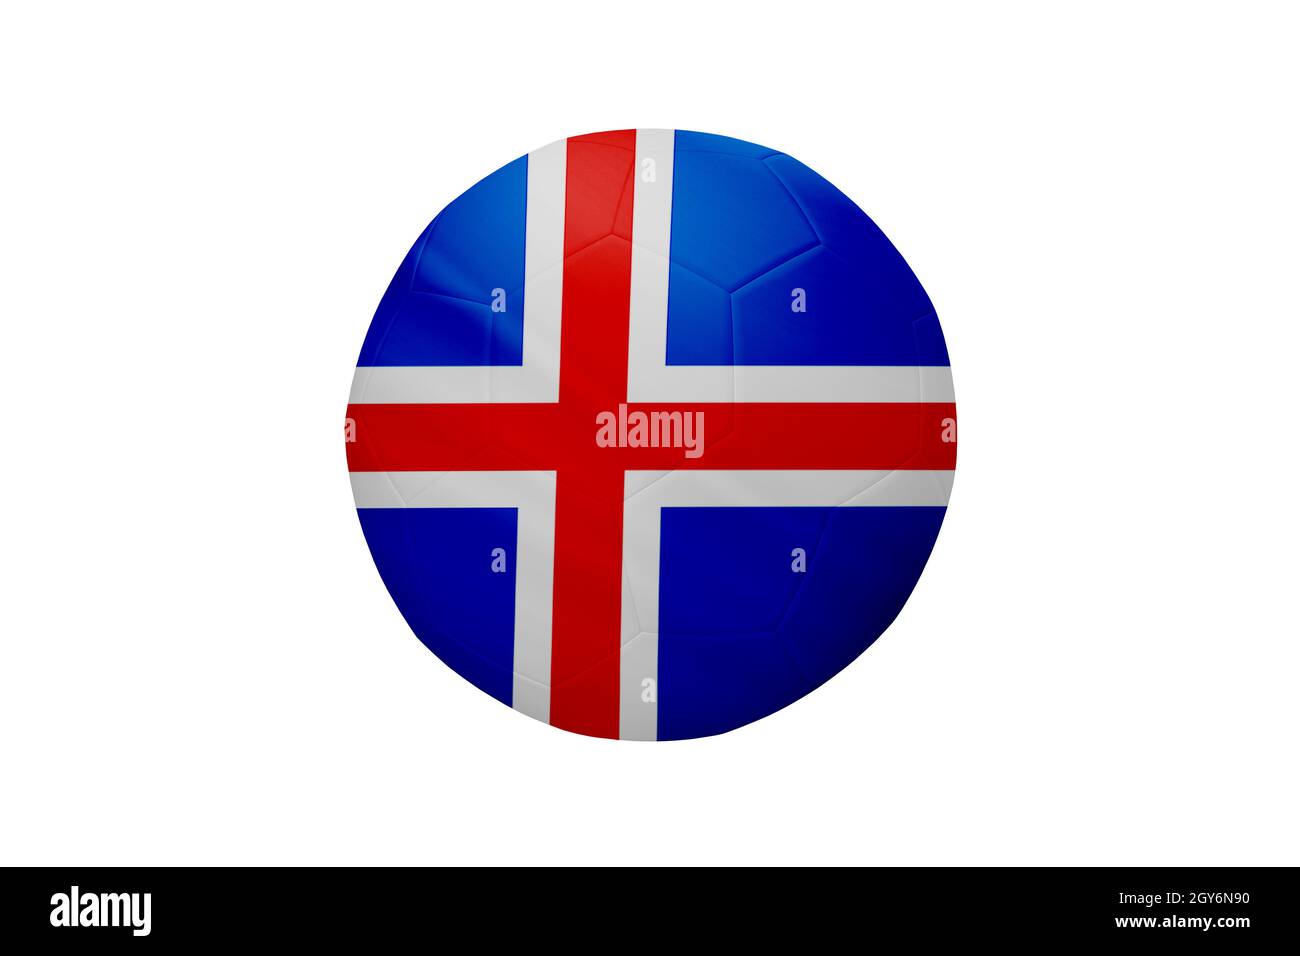 Football aux couleurs du drapeau islandais isolé sur fond blanc. Dans une image de championnat conceptuel soutenant l'Islande. Banque D'Images